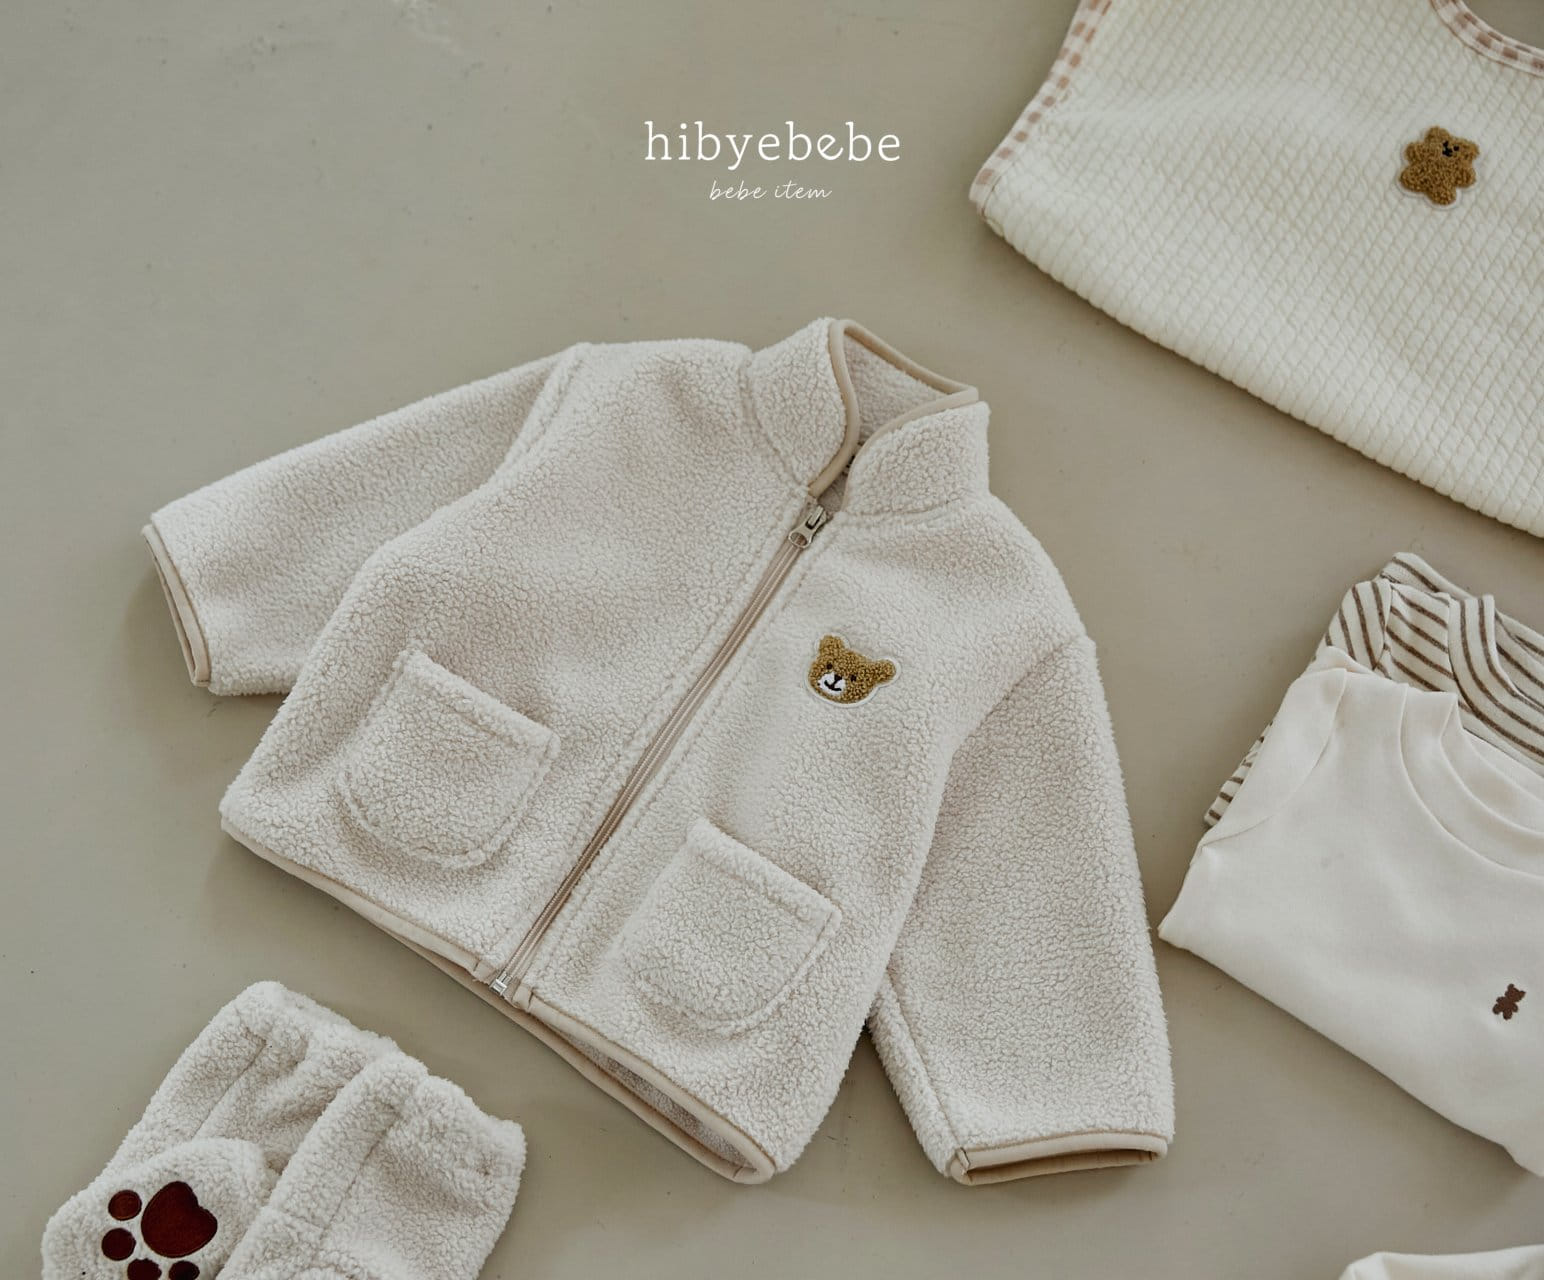 Hi Byebebe - Korean Baby Fashion - #onlinebabyboutique - Mongle Mongle Roaste Chestnut Hats - 7